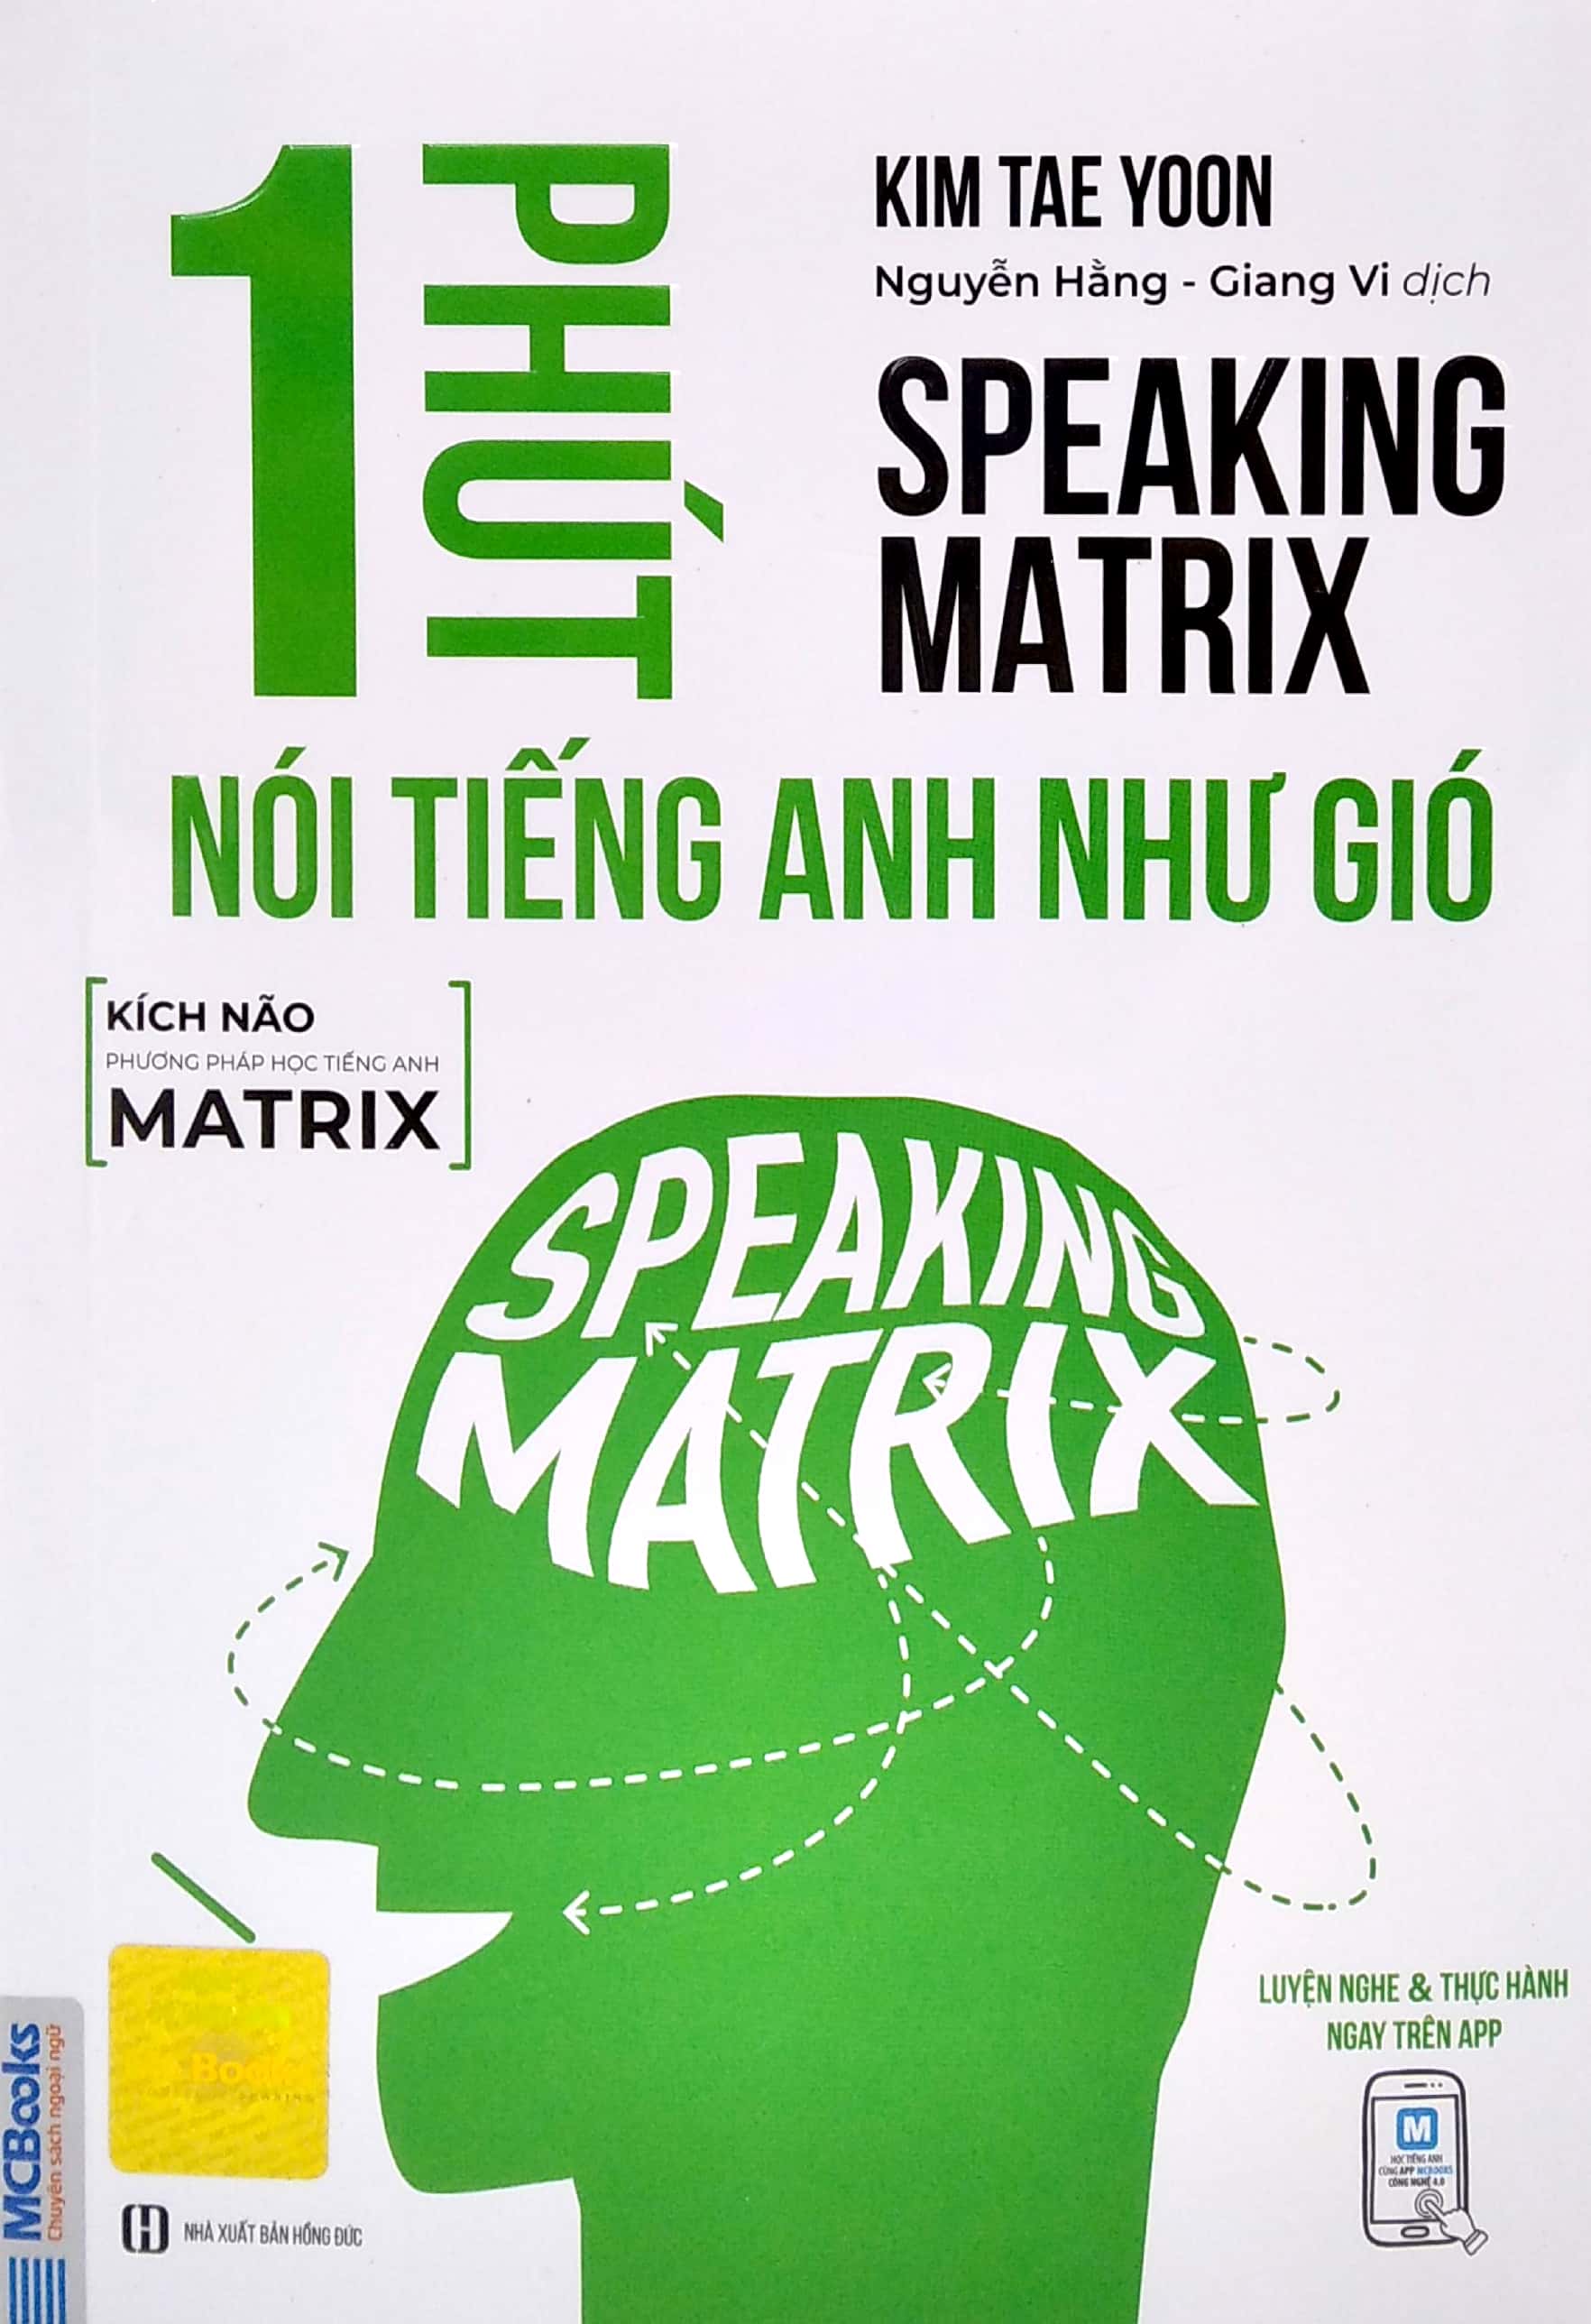 Speaking Matrix - 1 Phút Nói Tiếng Anh Như Gió PDF